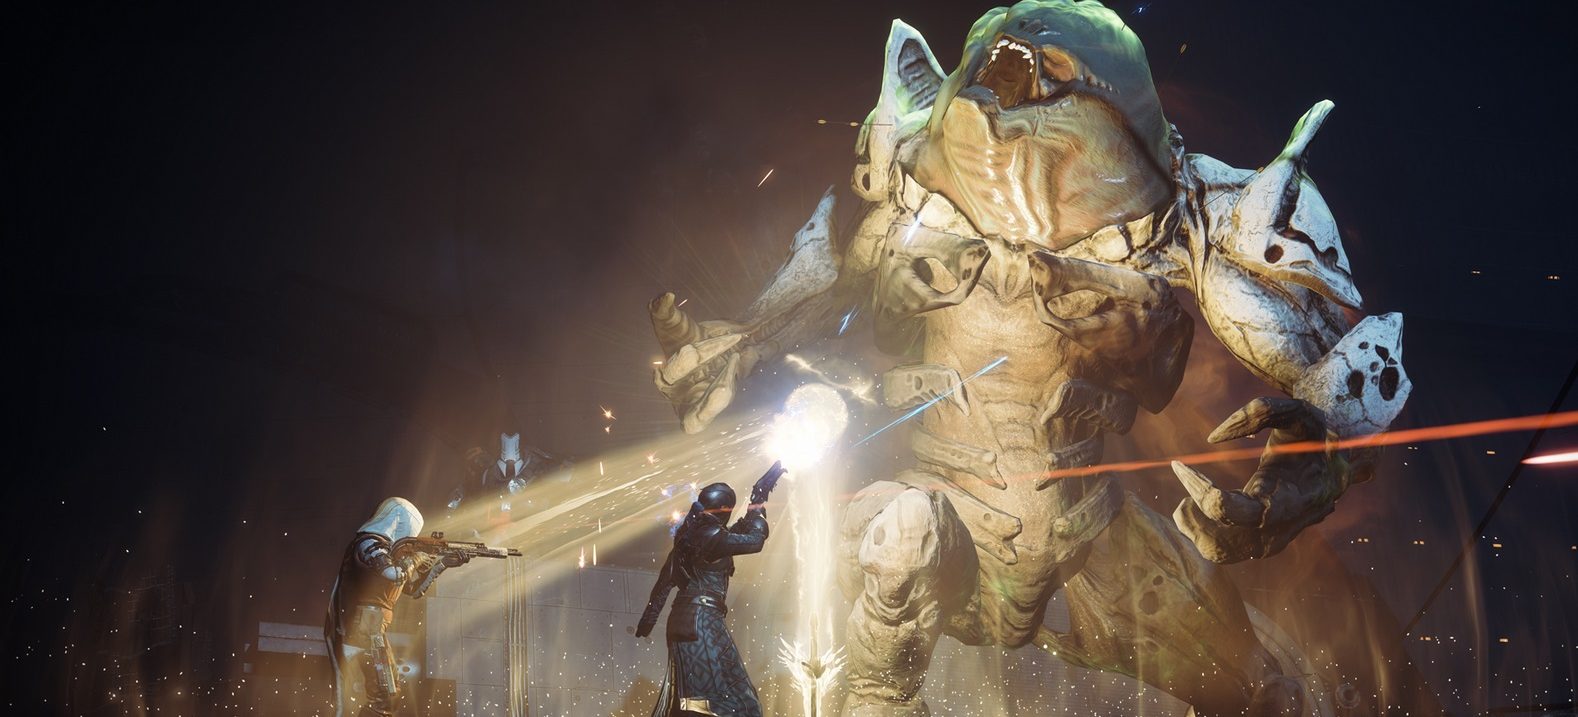 Destiny 2: Fans wollen mehr Inhalte wie Zerbrochener Thron – Das sagt Bungie